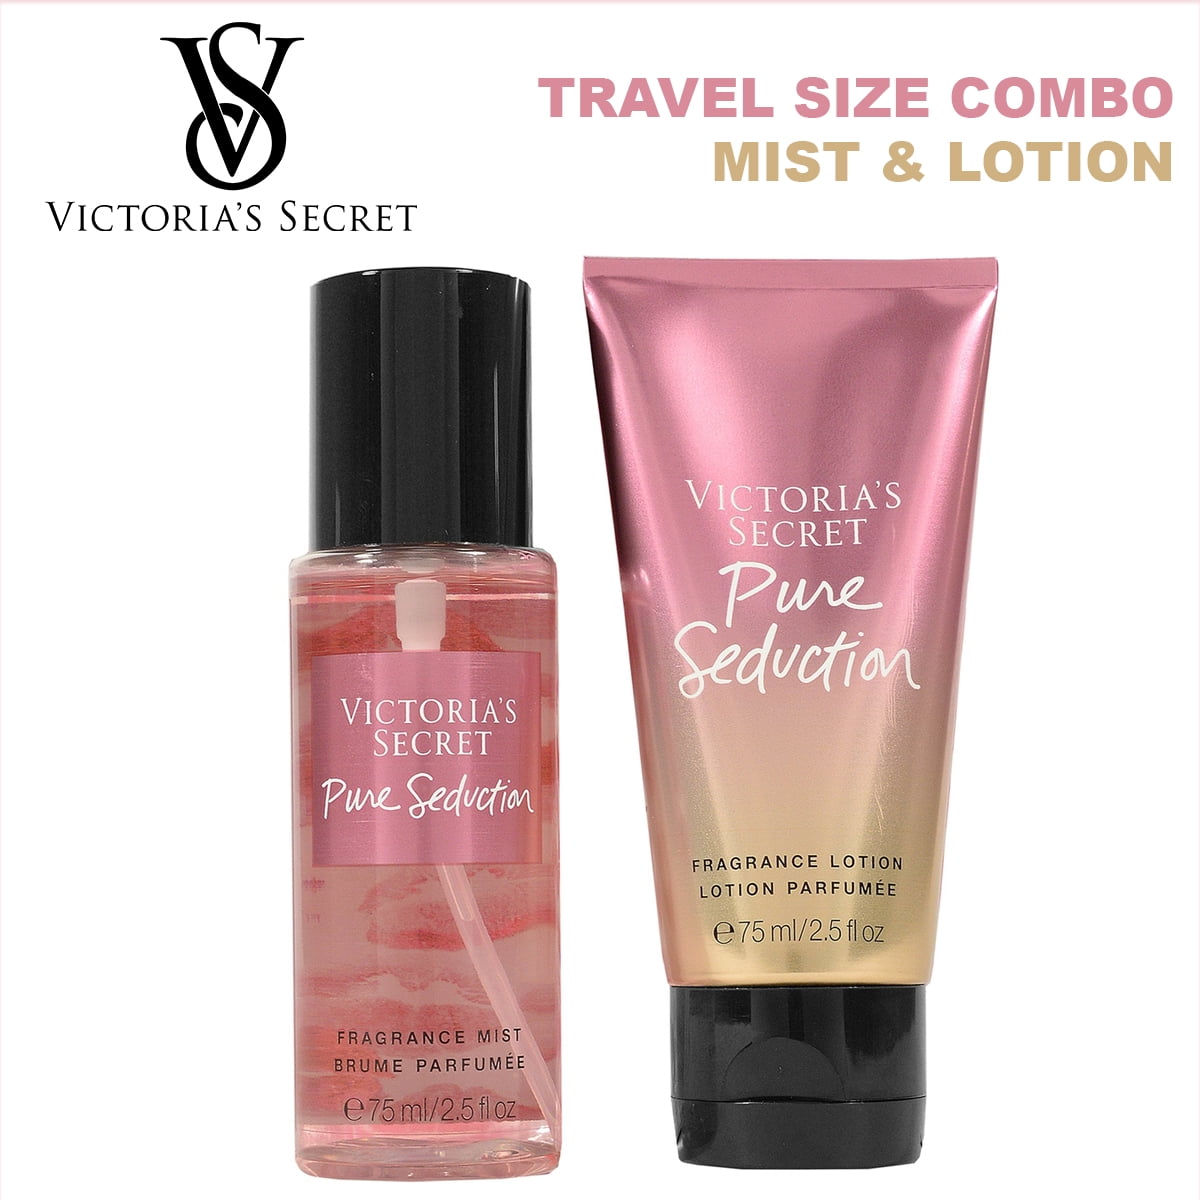 Kit Victoria's Secret Travel Size - 75 Ml, CM Outlet